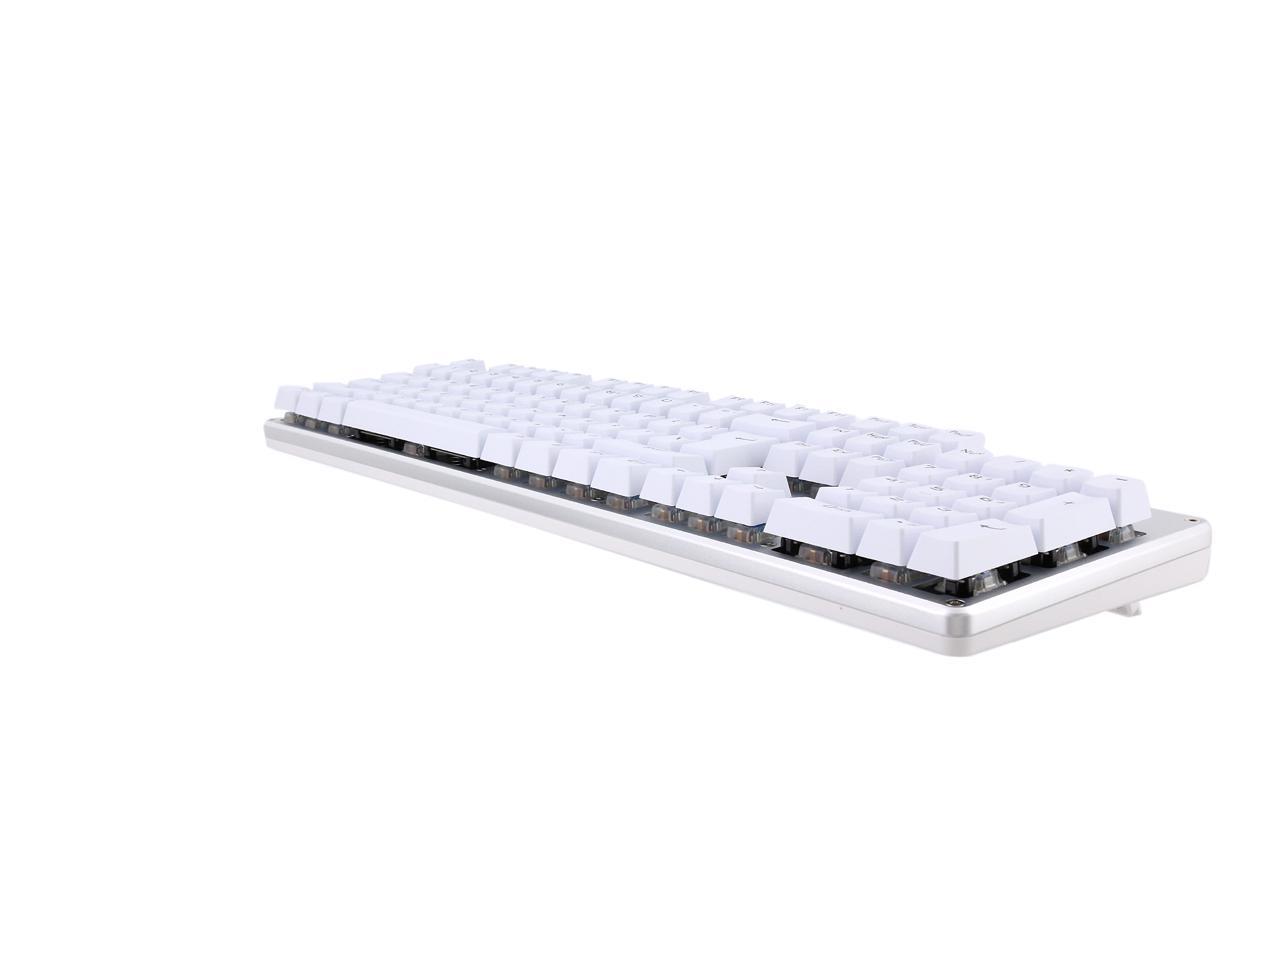 AULA Unicorn Backlit Mechanical Keyboard with Multi-color LED 